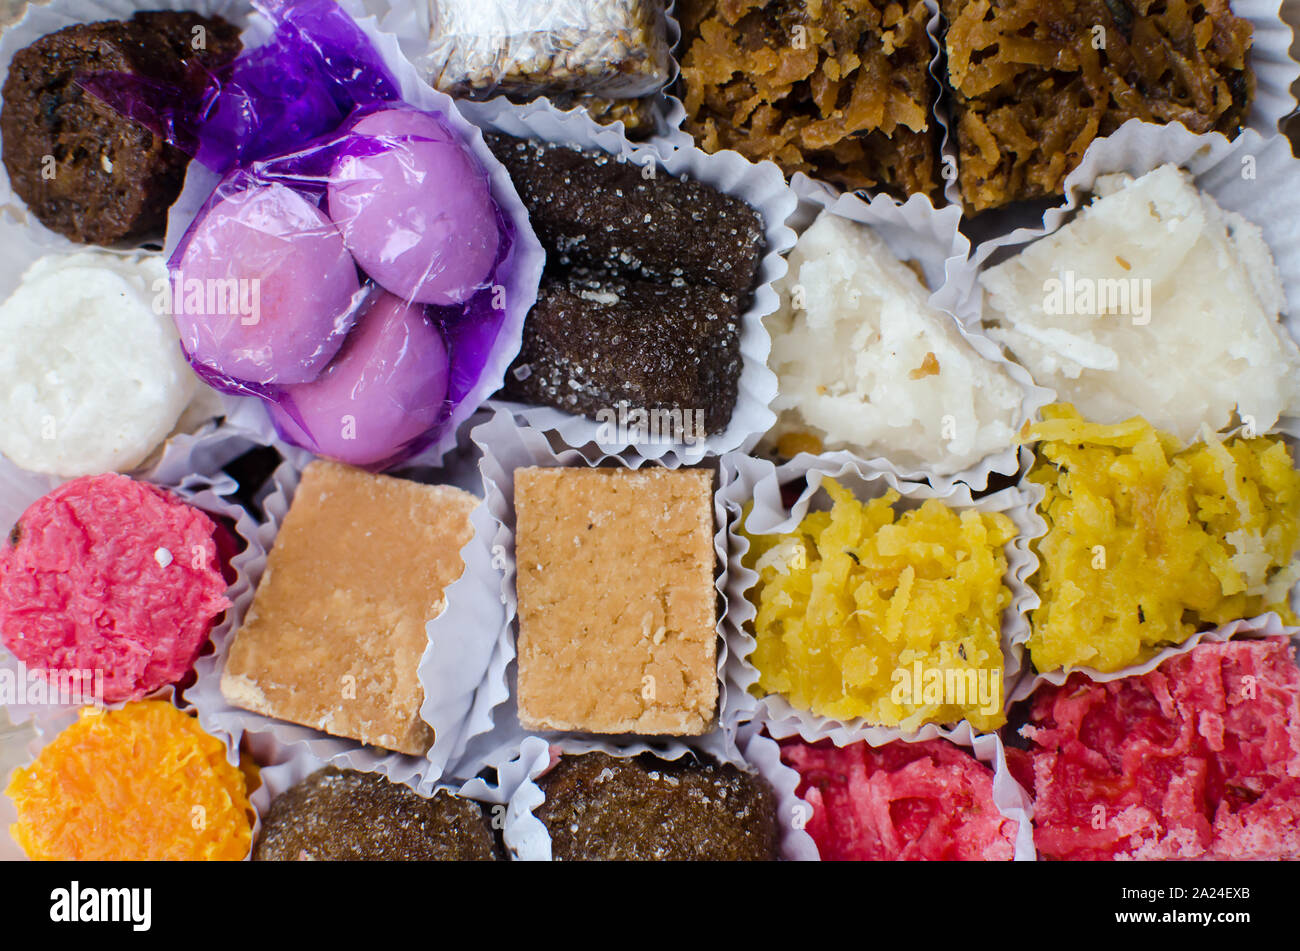 Colombiano di dolci fatti con una varietà di ingredienti come la noce di cocco grattugiata, latte, zucchero di canna e altri in combinazioni diverse Foto Stock